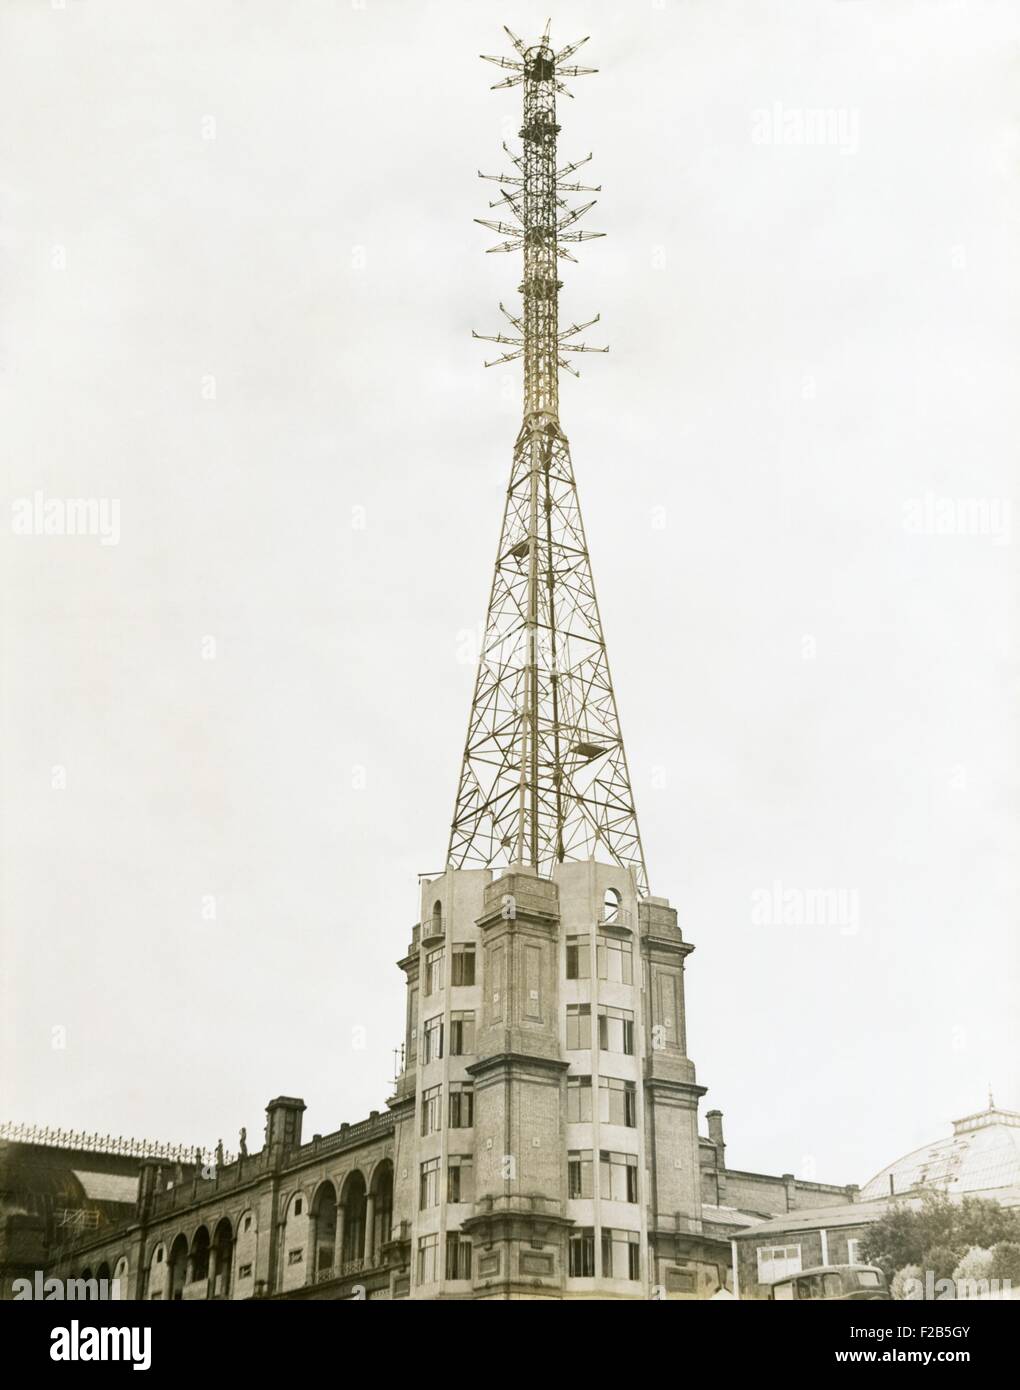 Fernsehturm am Alexandra Place in London, 17. August 1936. Die British Broadcasting Corporation (BBC) hat Fernsehen Büros, Studios und Sender zum entwickeln und Testen von Fernsehen. Sie planten eine November 1936 Öffnung des BBC-Fernsehens. -(BSLOC 2014 17 132) Stockfoto